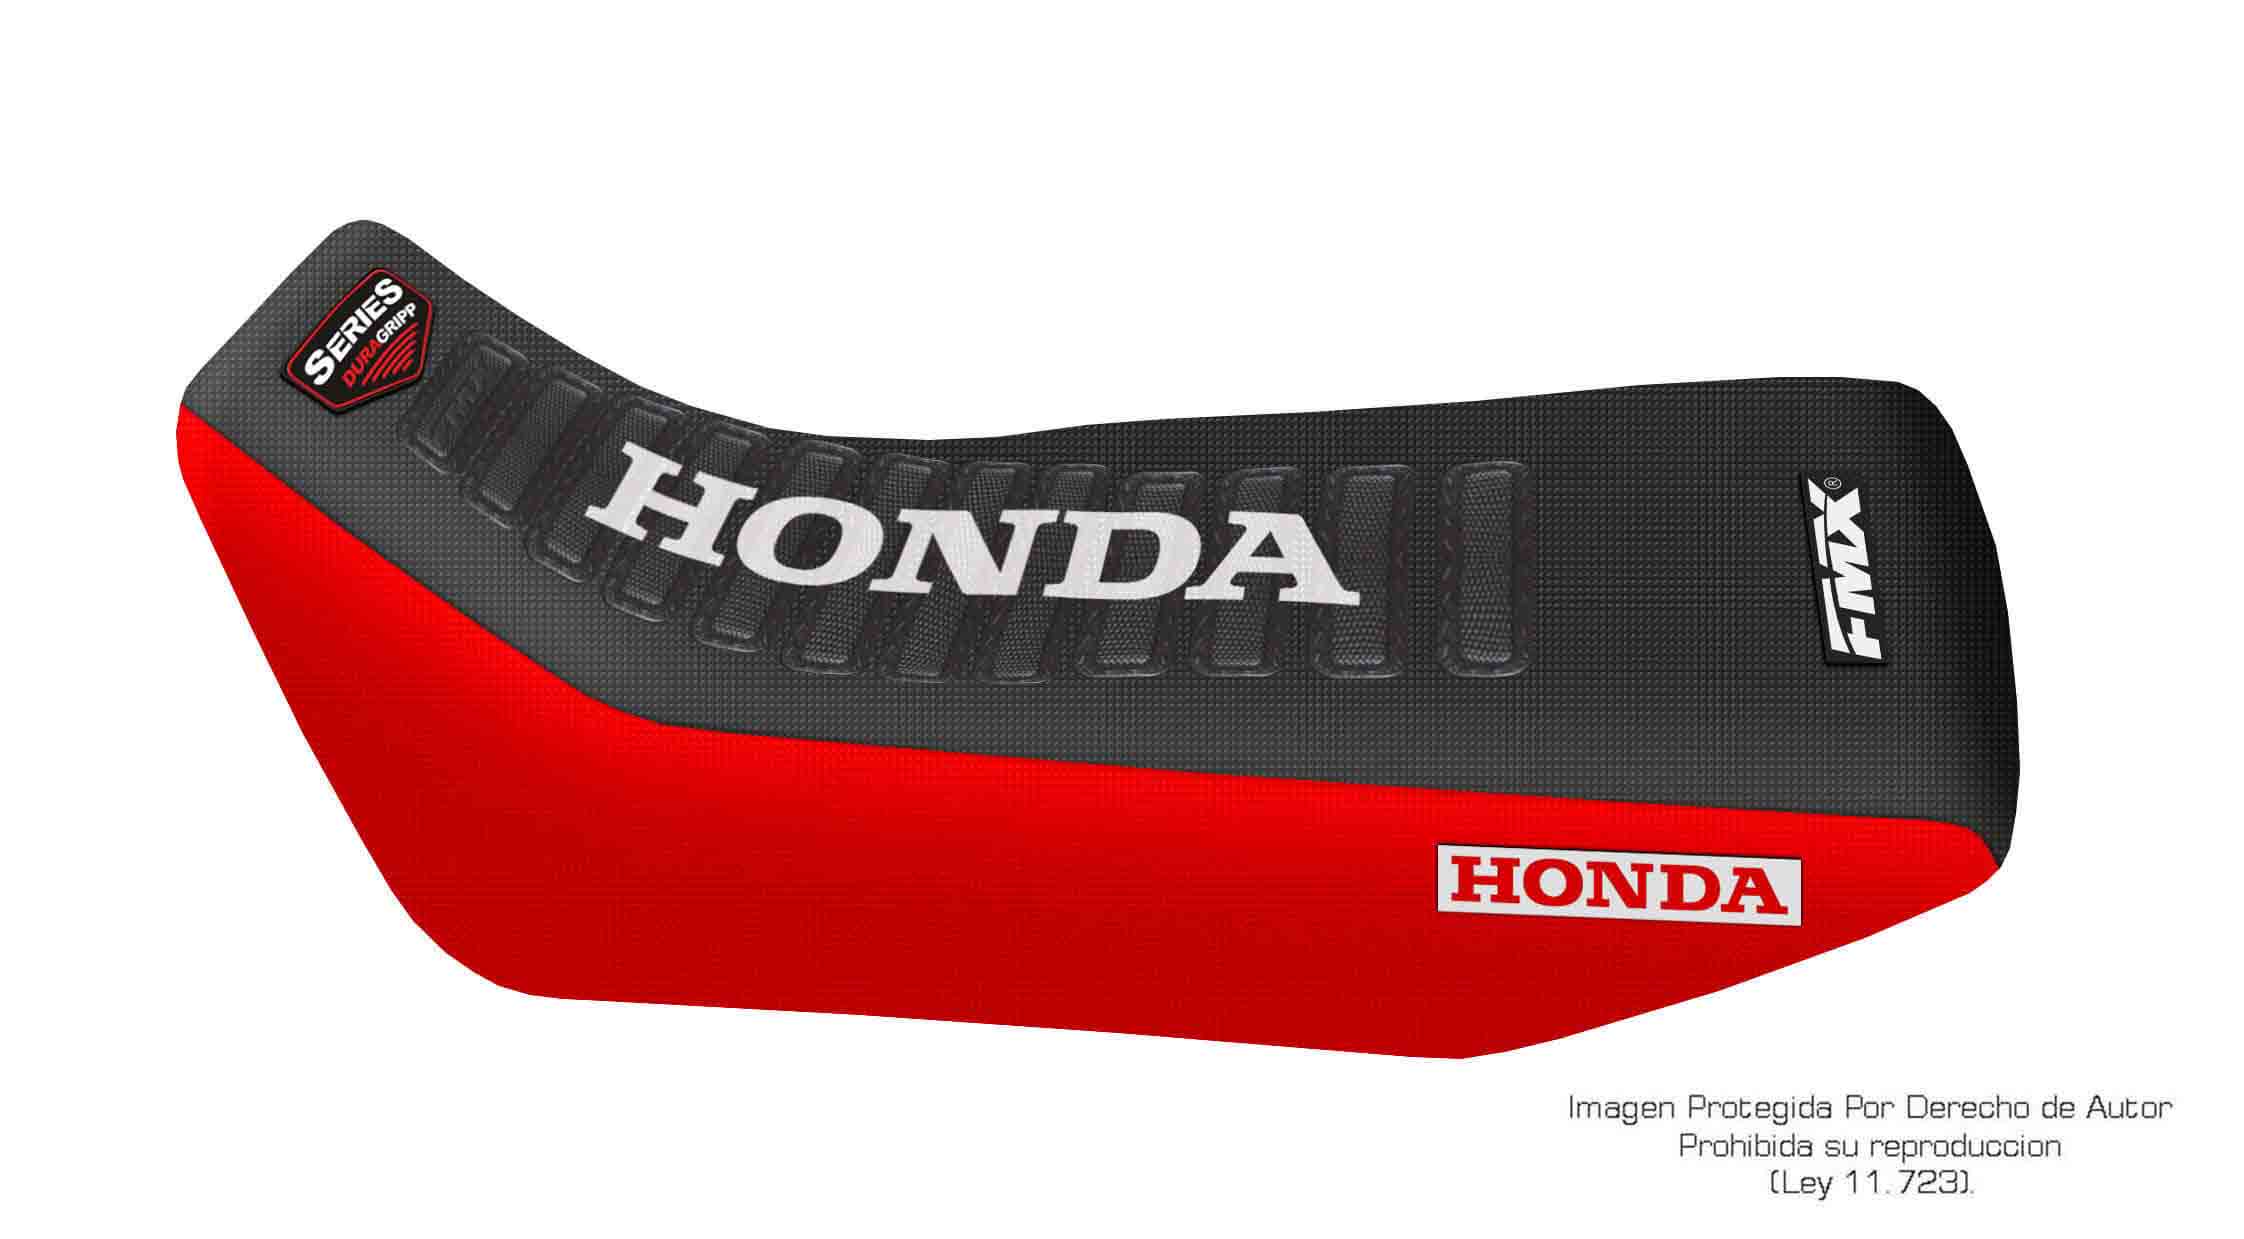 Funda Asiento Honda Nx 125 - Nx 150 Series. Es una obra de arte artesanal fabricada en Argentina, nuestros productos son de la mejor calidad.